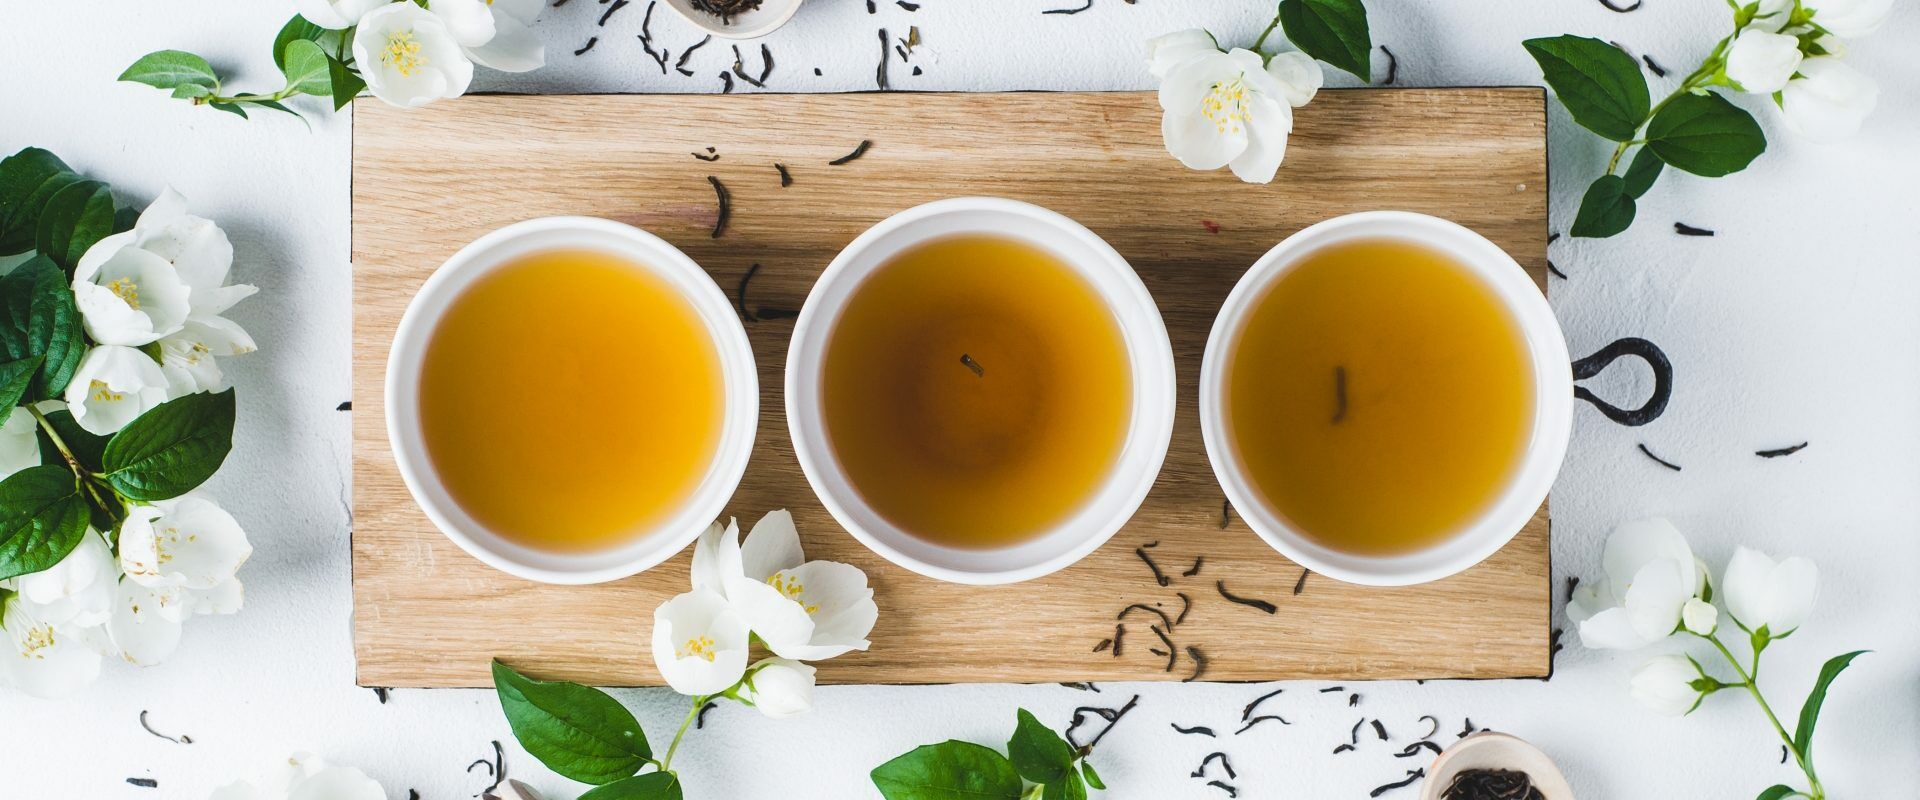 Zielona herbata - jakie domowe kosmetyki DIY można zrobić z zielonej herbaty? Zielona herbata w 3 filiżankach na drewnianej desce, wokół leżą listki herbaty i jaśmin.